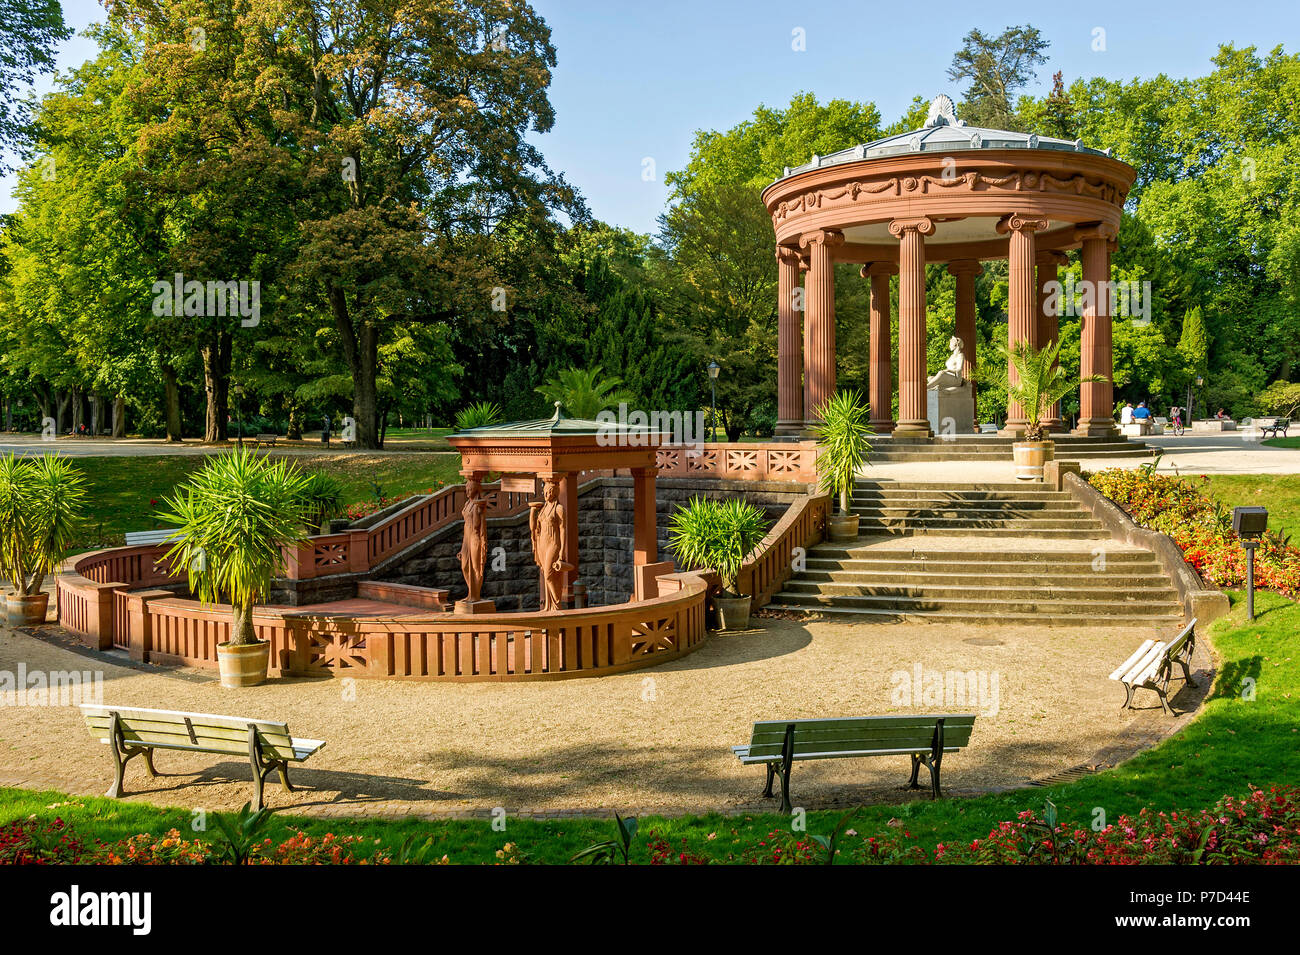 Elisabethenbrunnen, jardín spa de Bad Homburg vor der Höhe, Hesse, Alemania Foto de stock